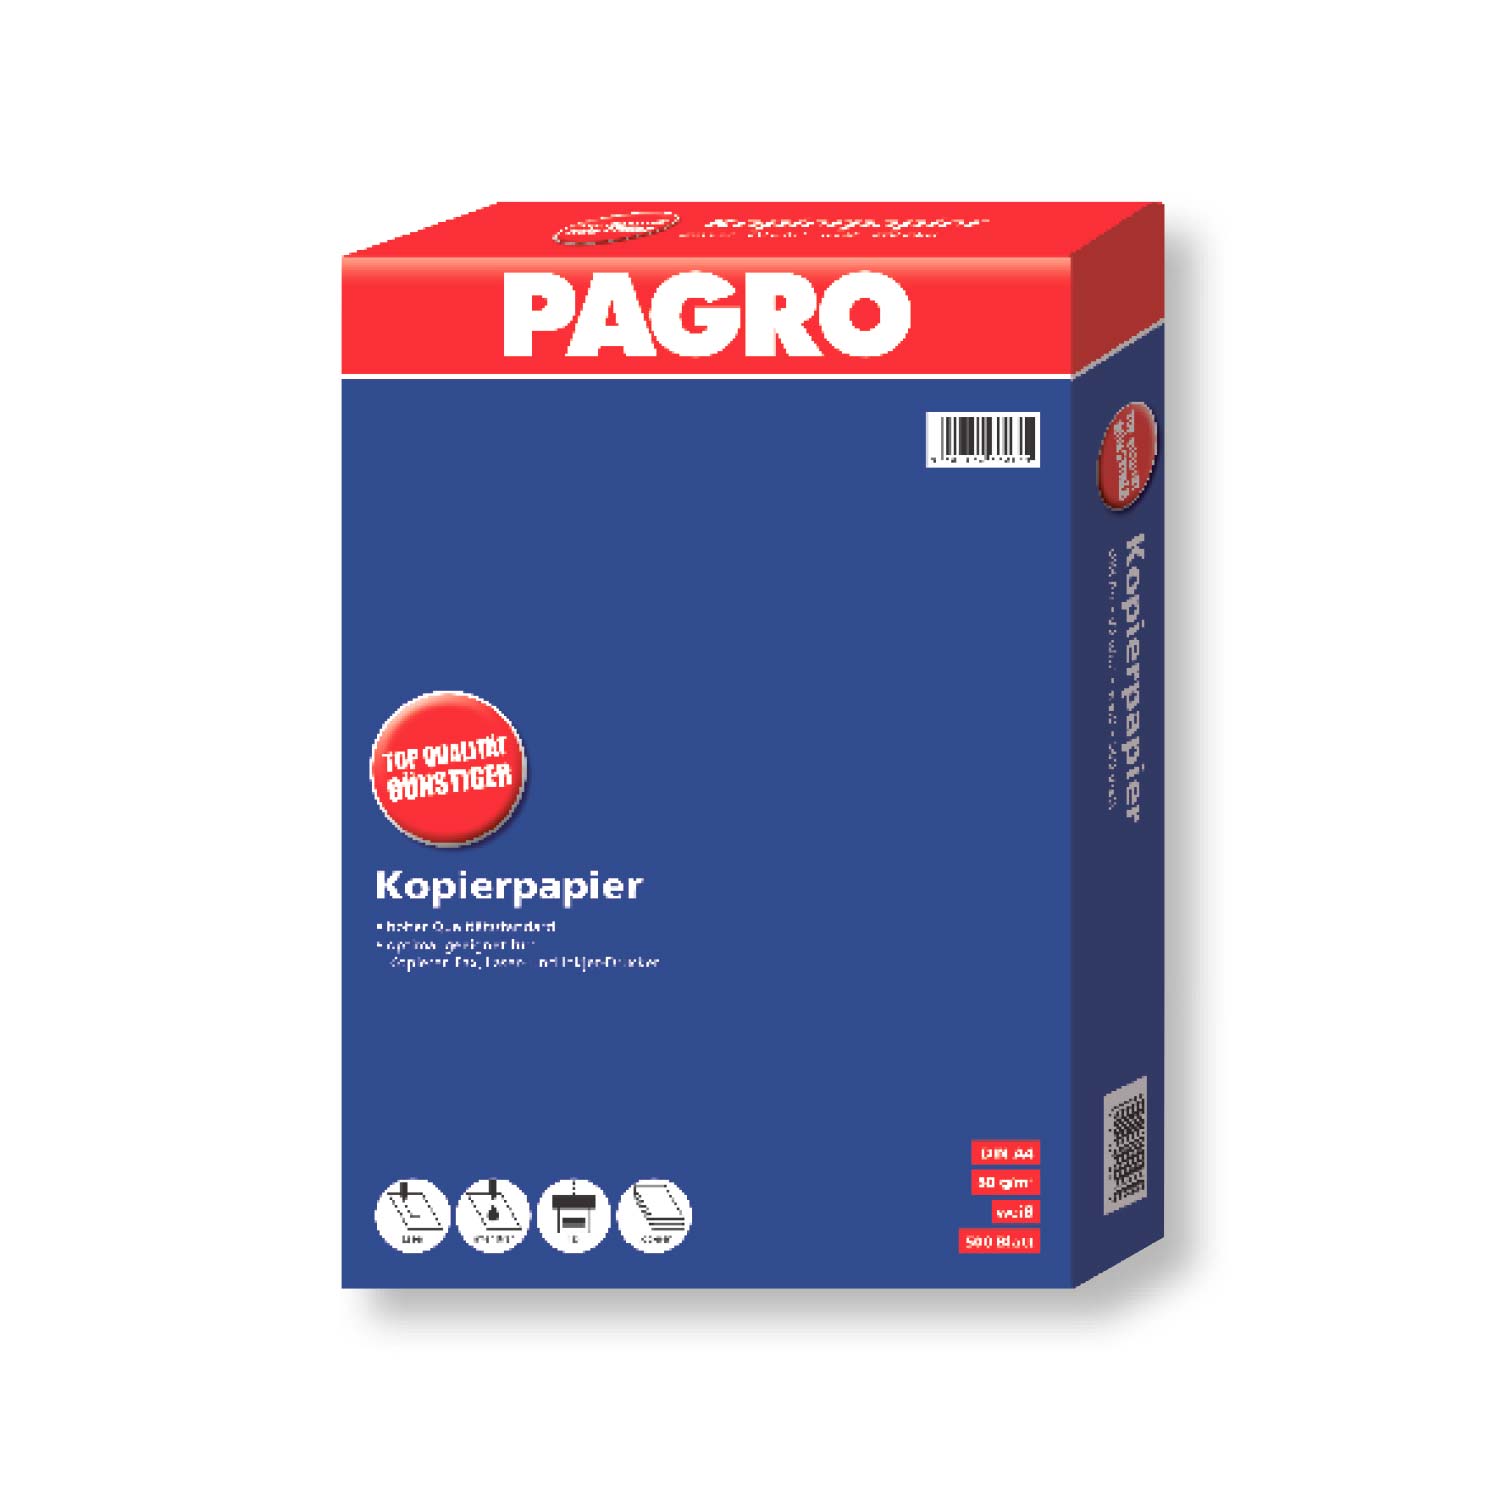 Pagro Kopierpapier A4 500 Blatt 80 g/m²